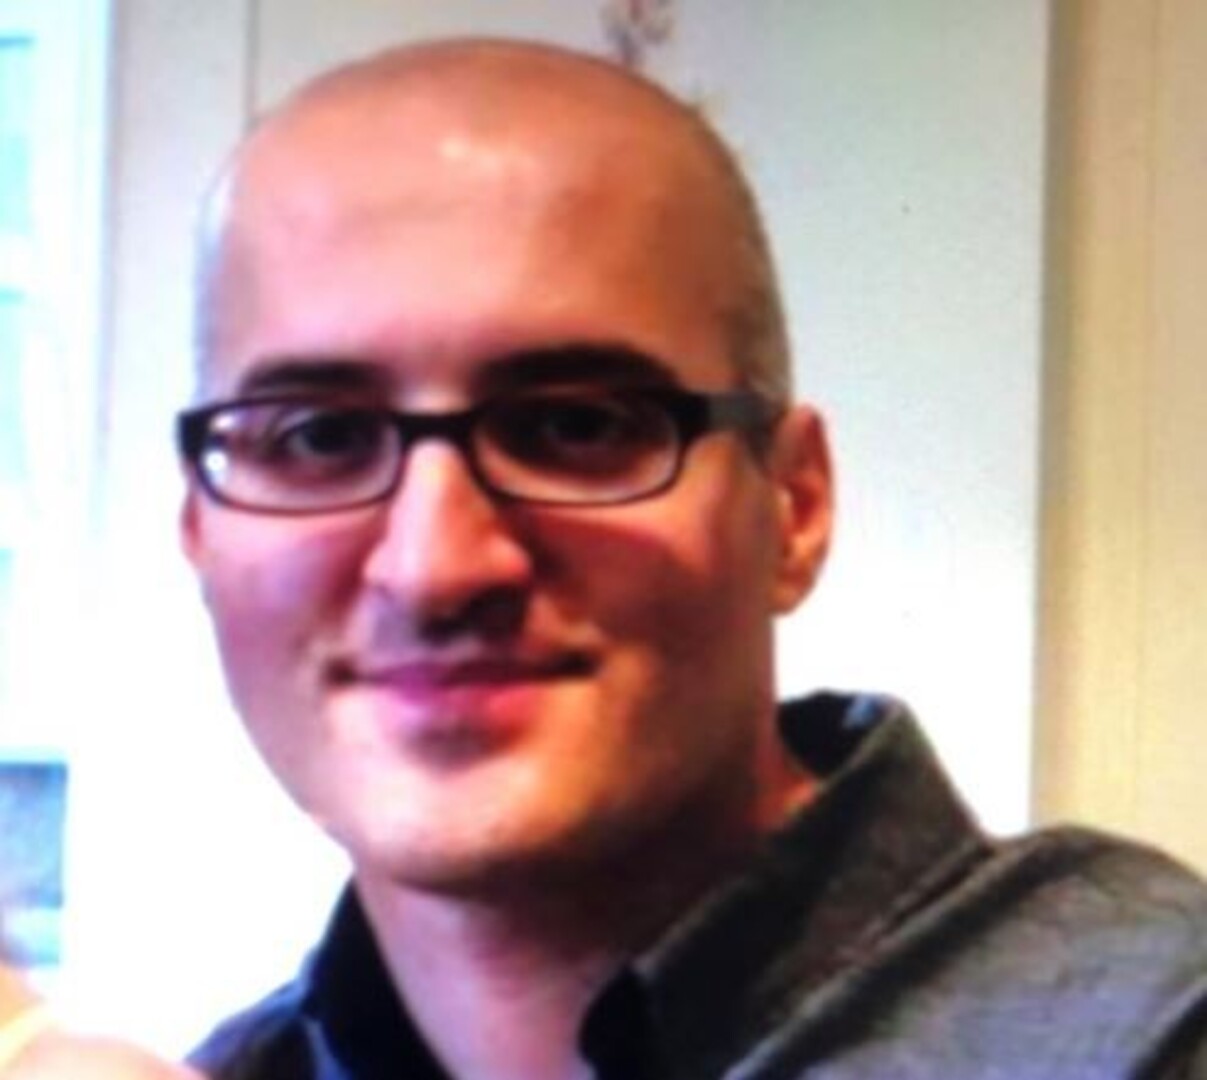 Polizei bittet um Mithilfe! 39-jähriger Mann wird seit 8 Tagen vermisst - wer kann Hinweise geben?